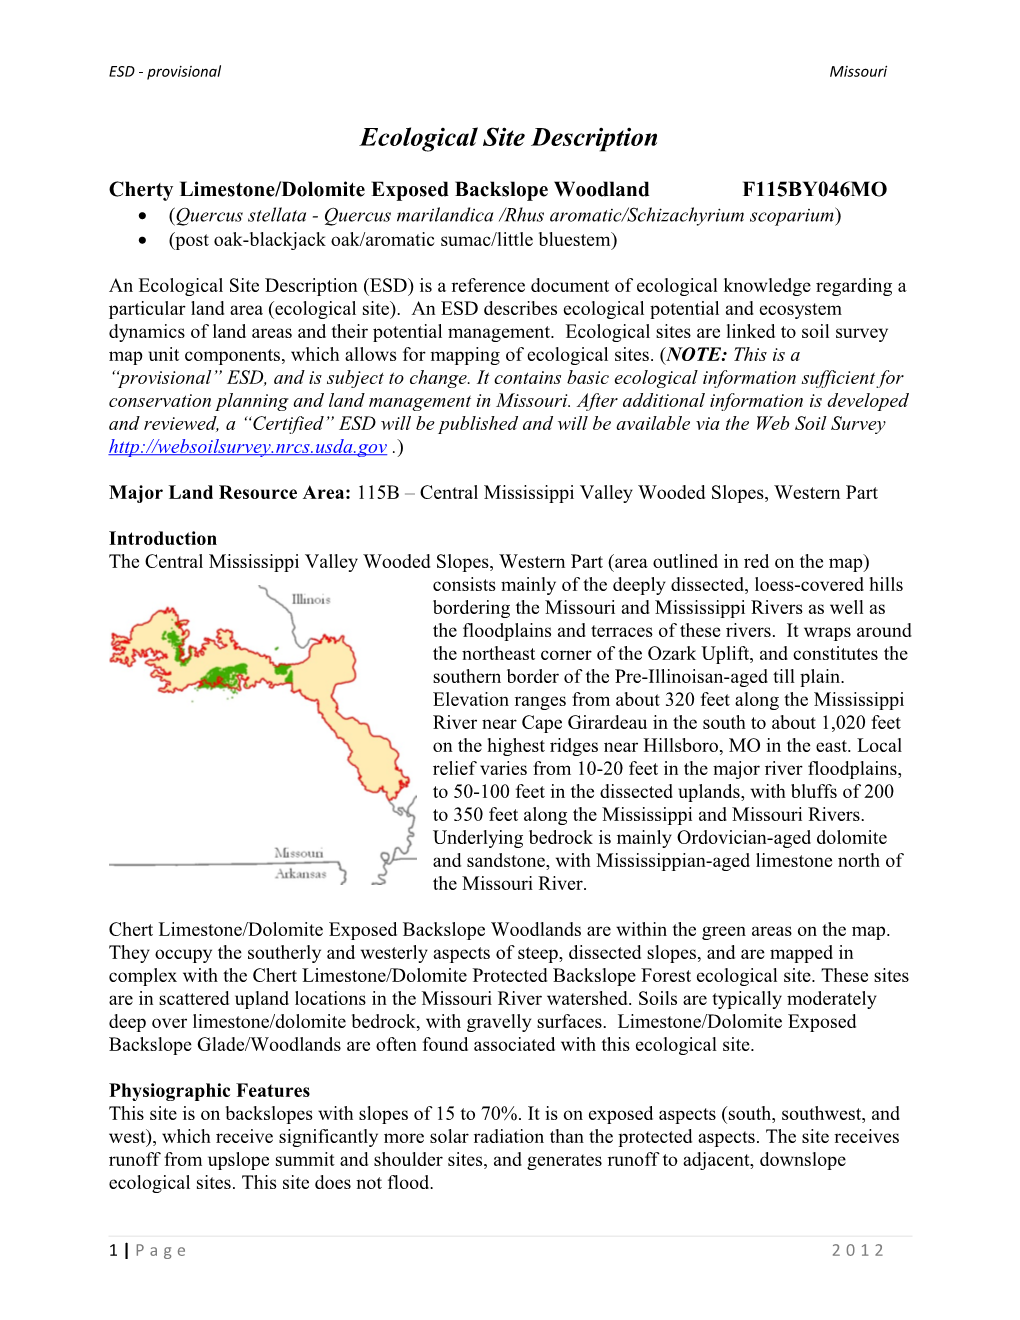 Cherty Limestone/Dolomite Exposed Backslope Woodland F115BY046MO